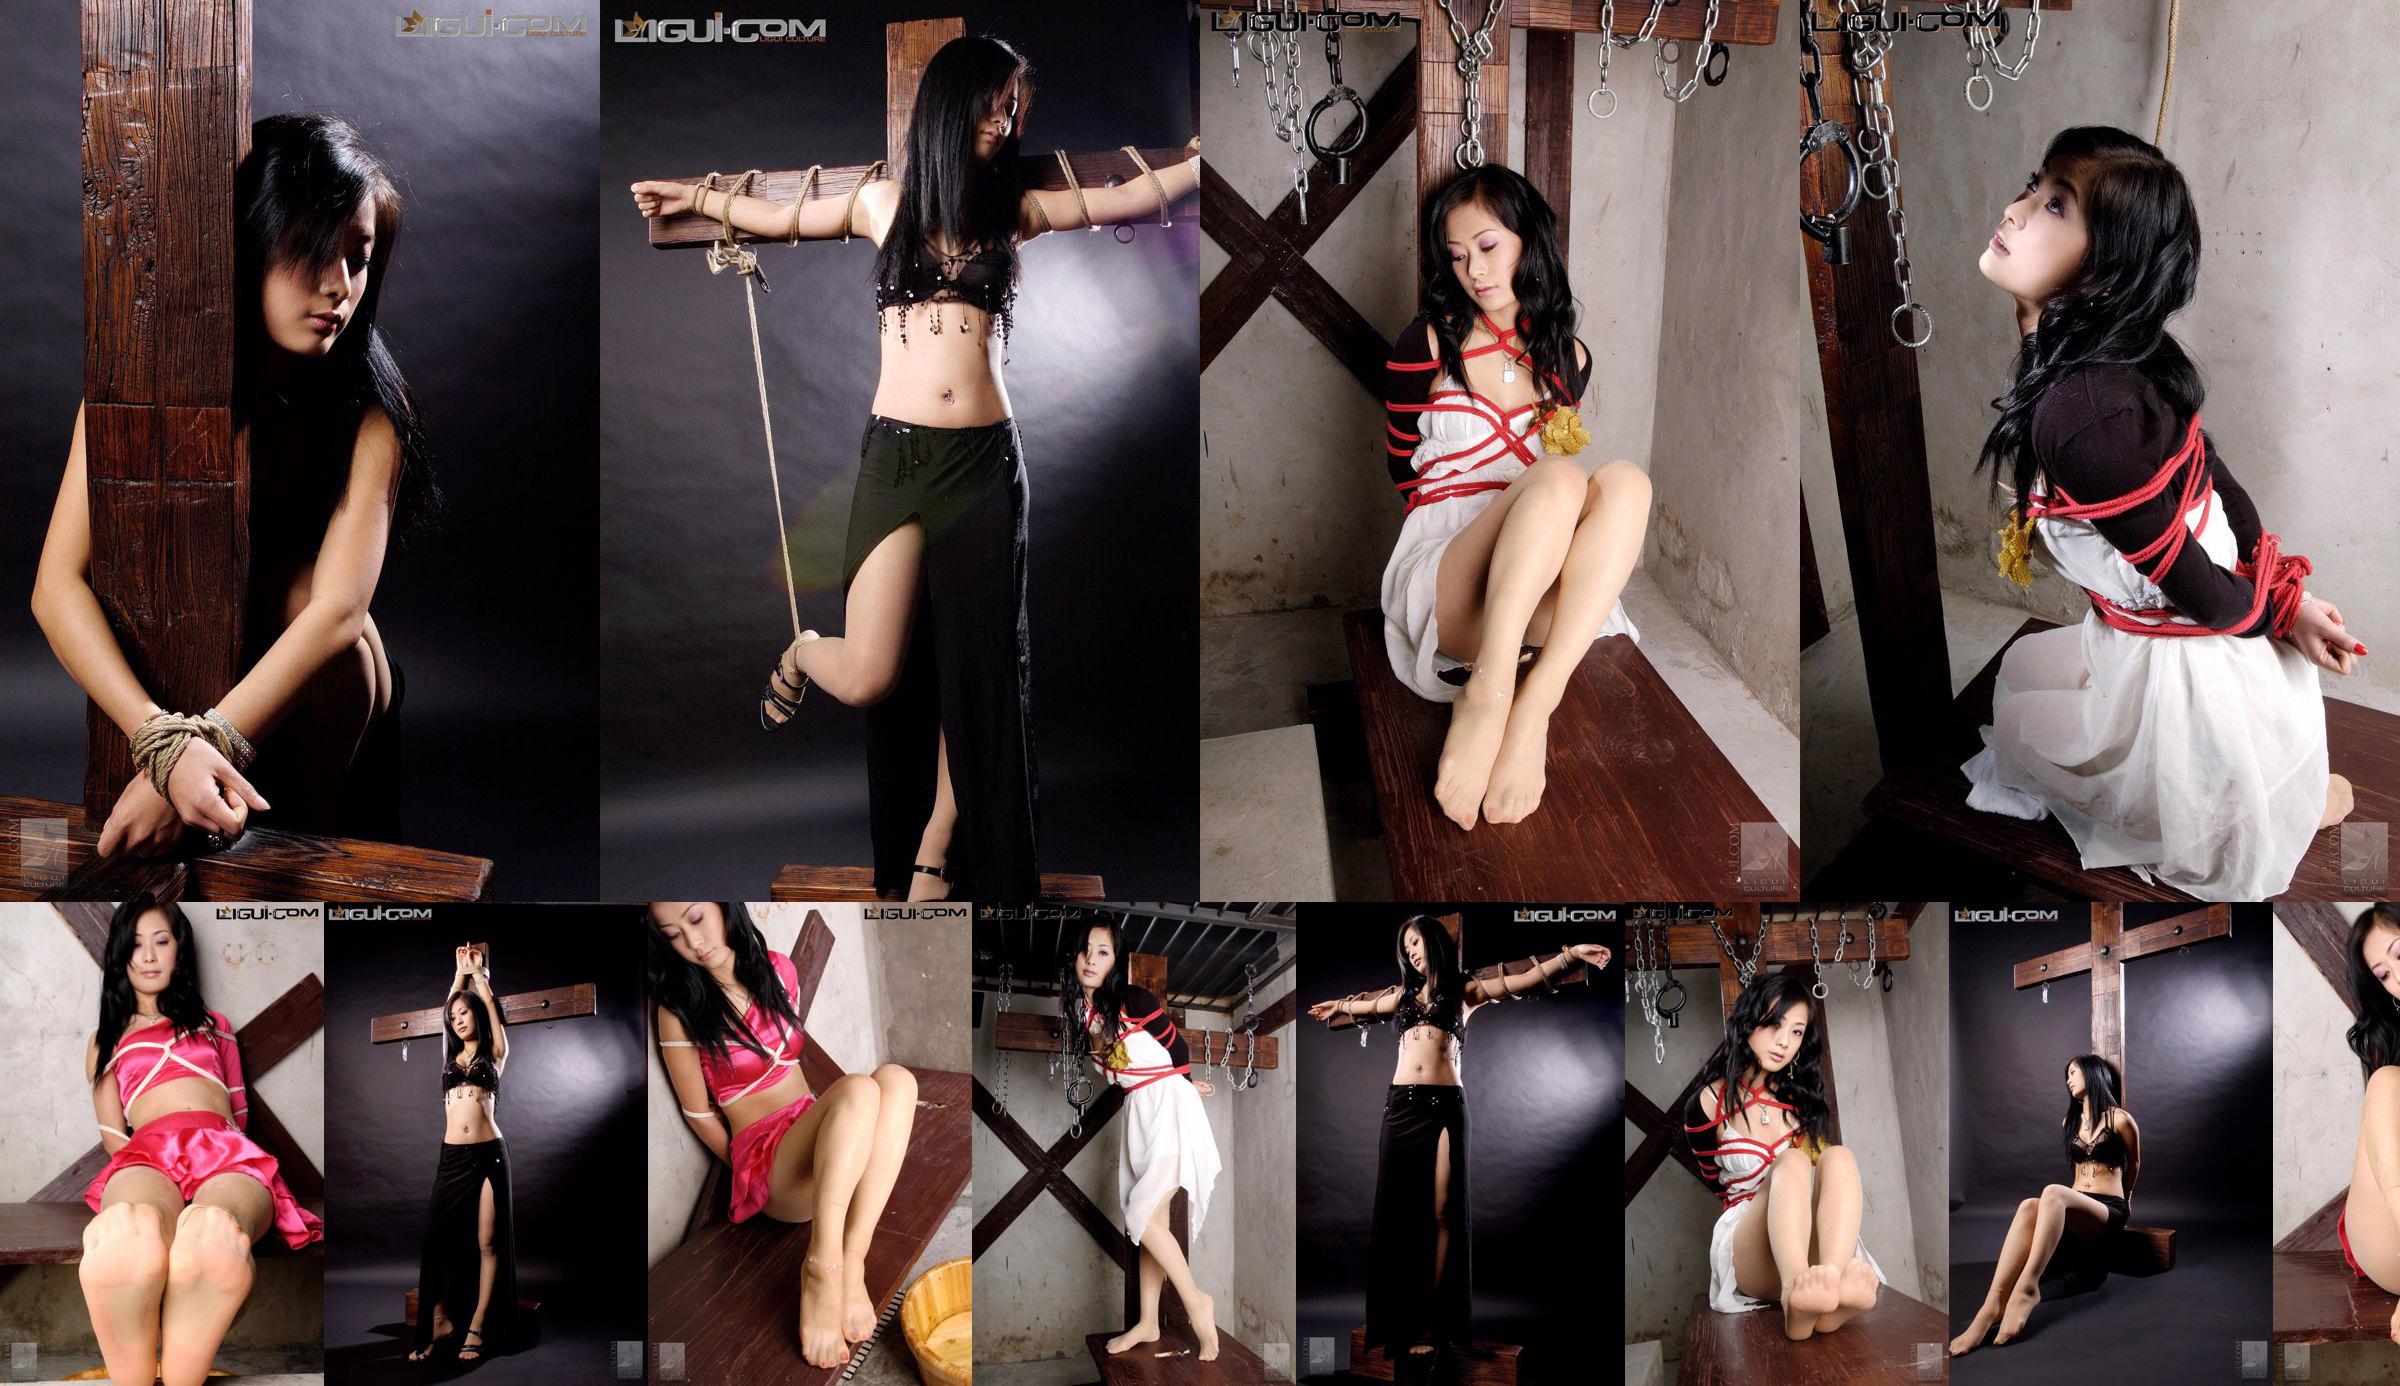 [Yuzumi Mitsuka LiGui] Modell Saya "Red String Bound" Schöne Beine und Jadefüße Foto Bild No.49e7fd Seite 1